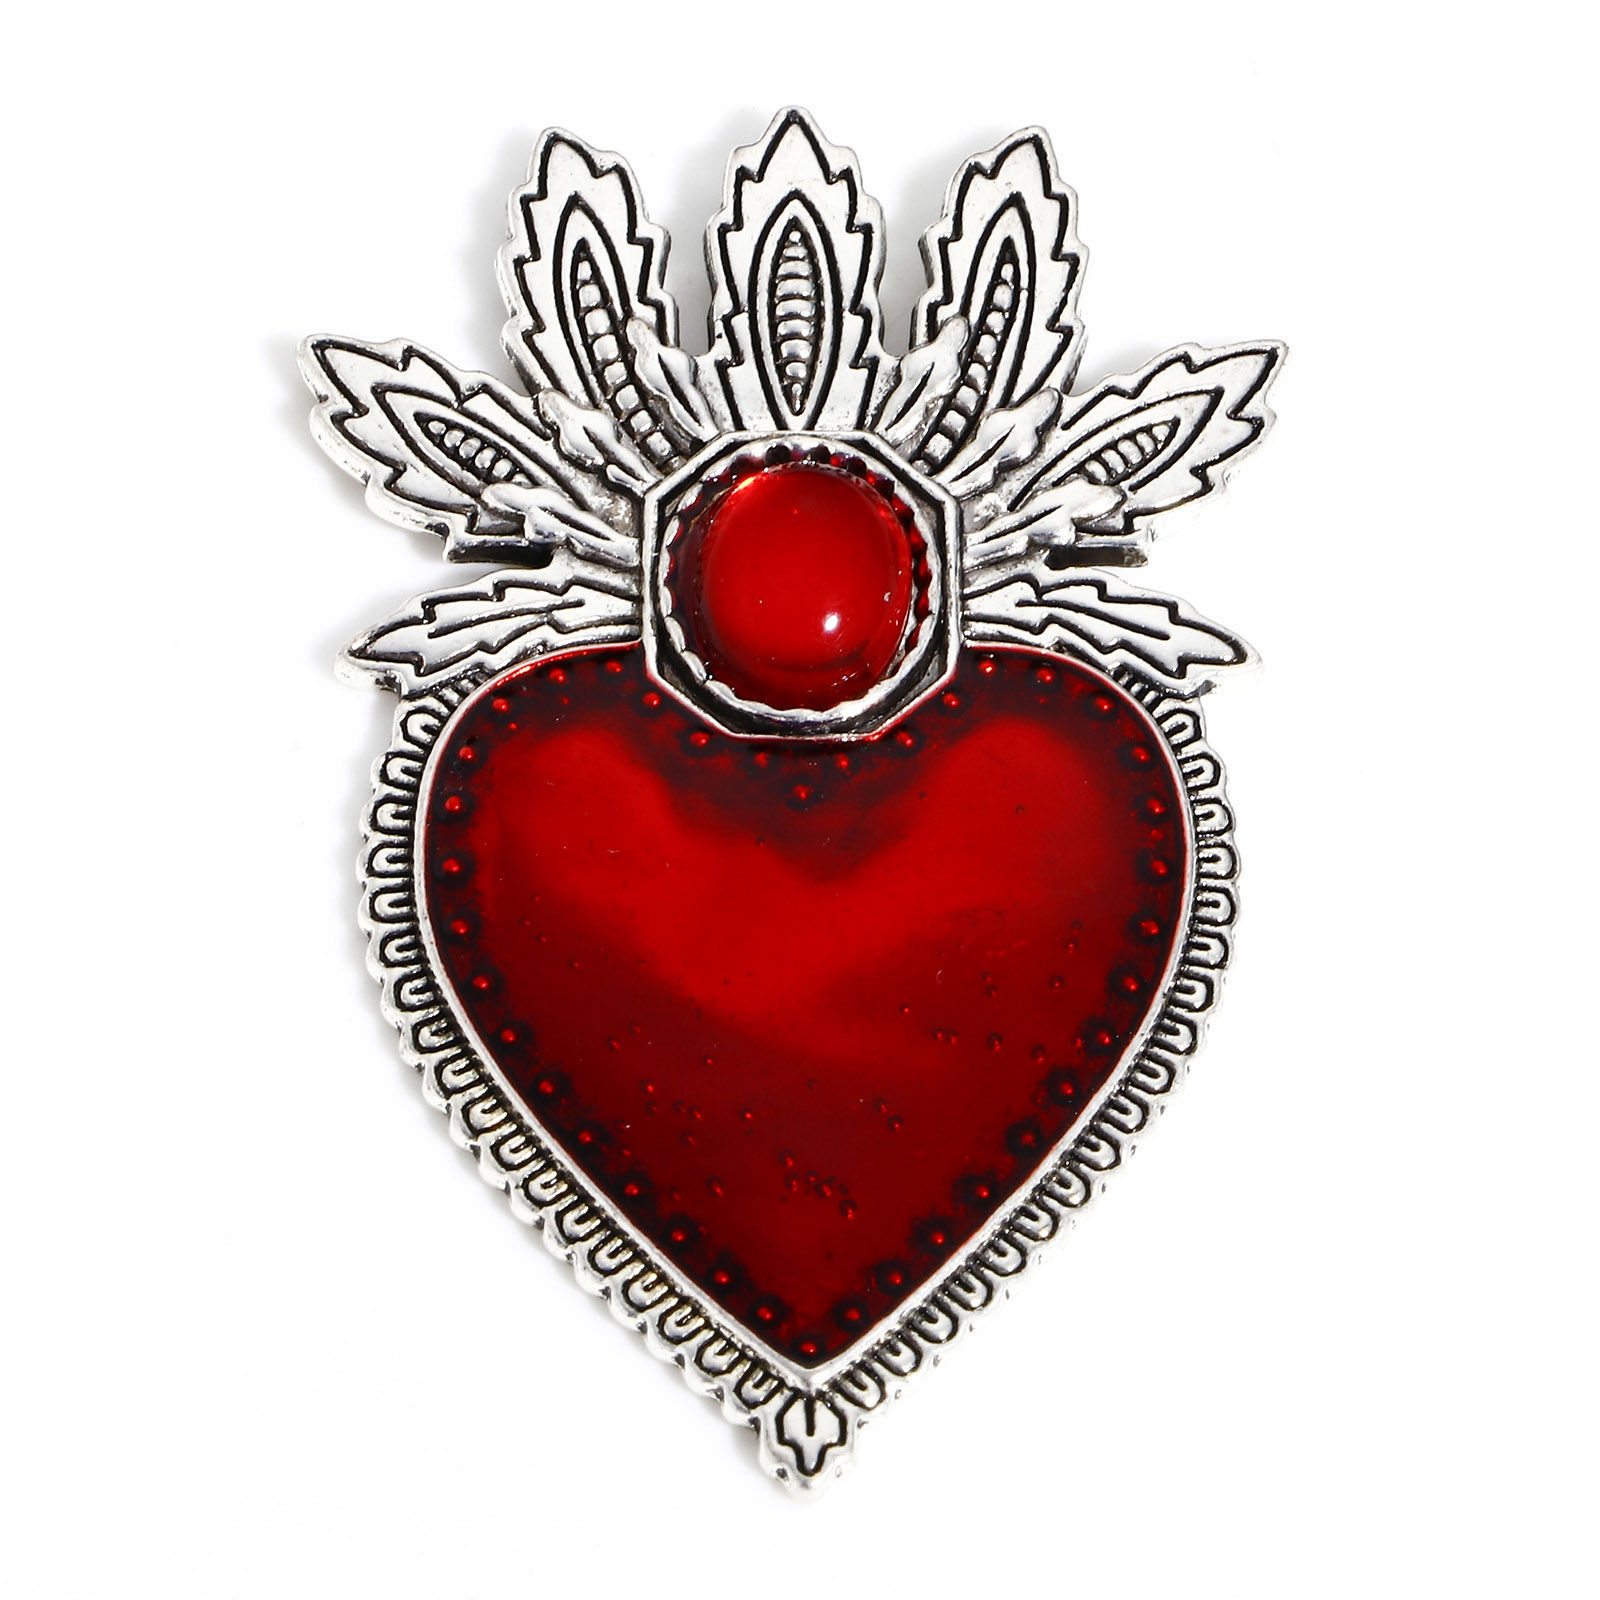 Picture of Zinc Based Alloy Religious Pendants Antique Silver Color Red Ex Voto Heart Enamel 5.9cm x 3.5cm, 5 PCs